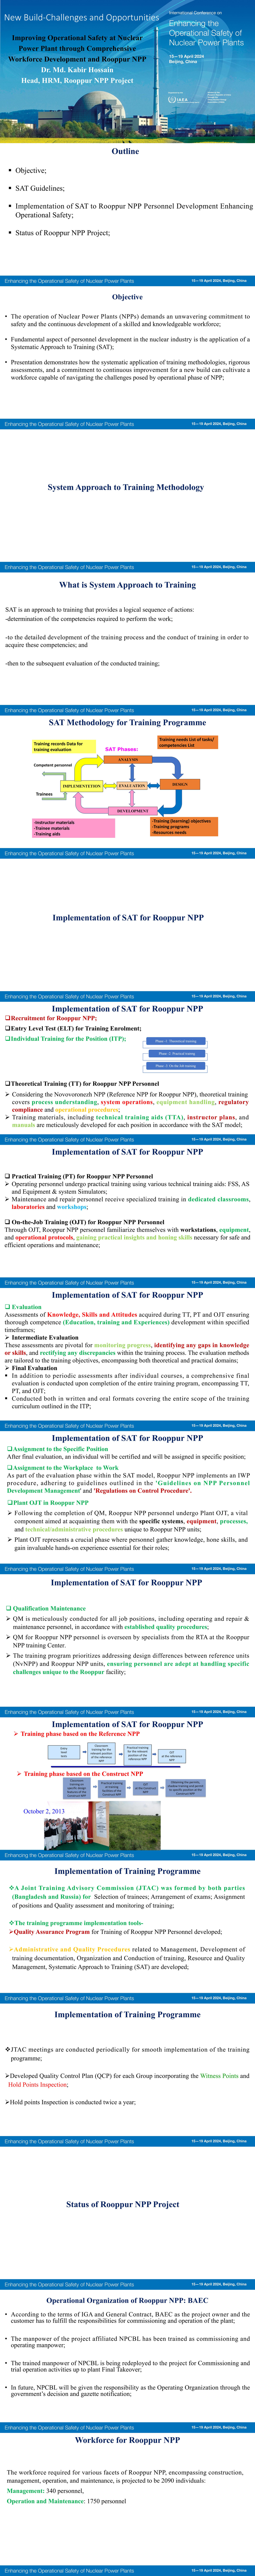 0417更新-18_08_M Hossain_Improving Operational Safety at NPPs through Comprehensive Workforce Development_00.jpg